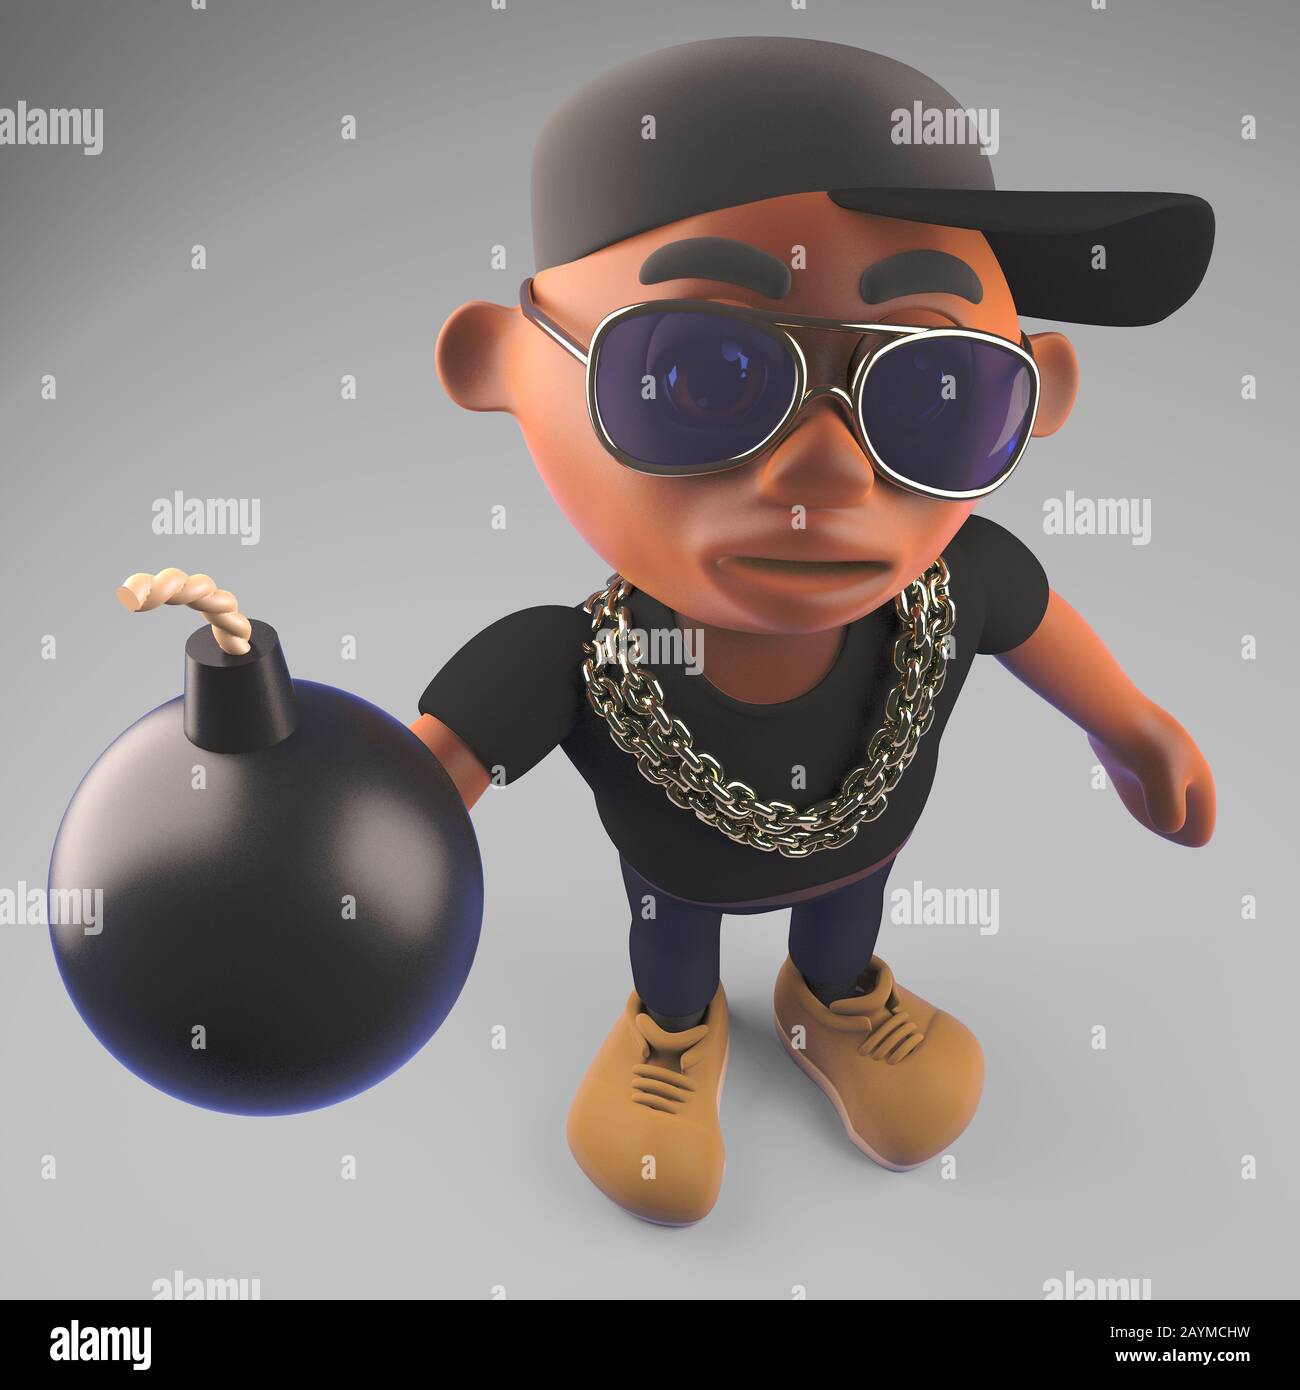 Un artiste cool de rap hiphop noir dans une casquette de baseball tenant une bombe, illustration tridimensionnelle rendu Banque D'Images